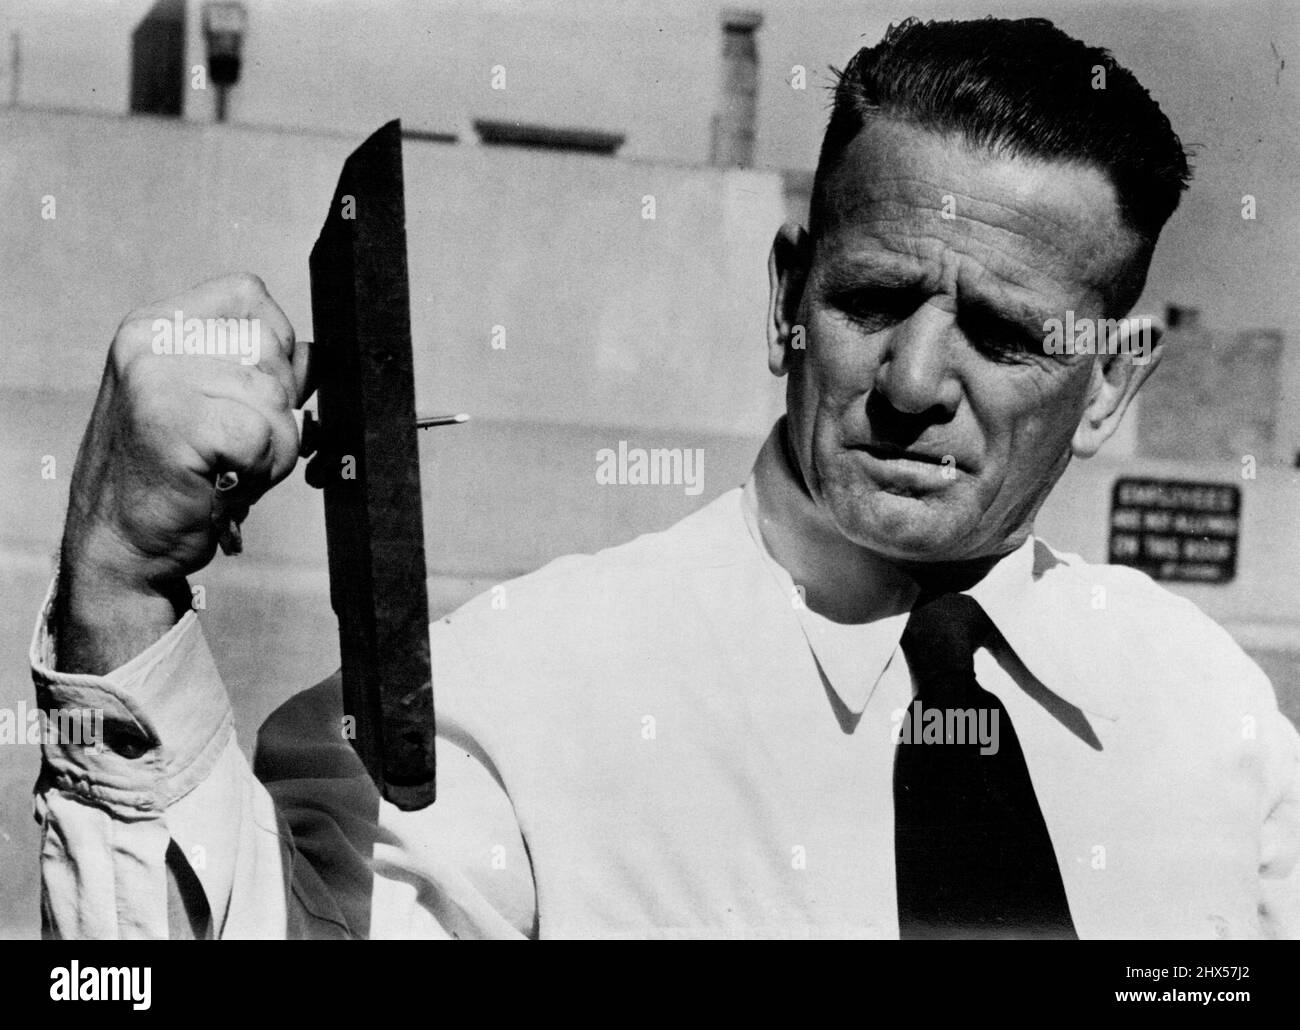 Don Athaldo - Australian Strongman. August 8, 1949. Stock Photo